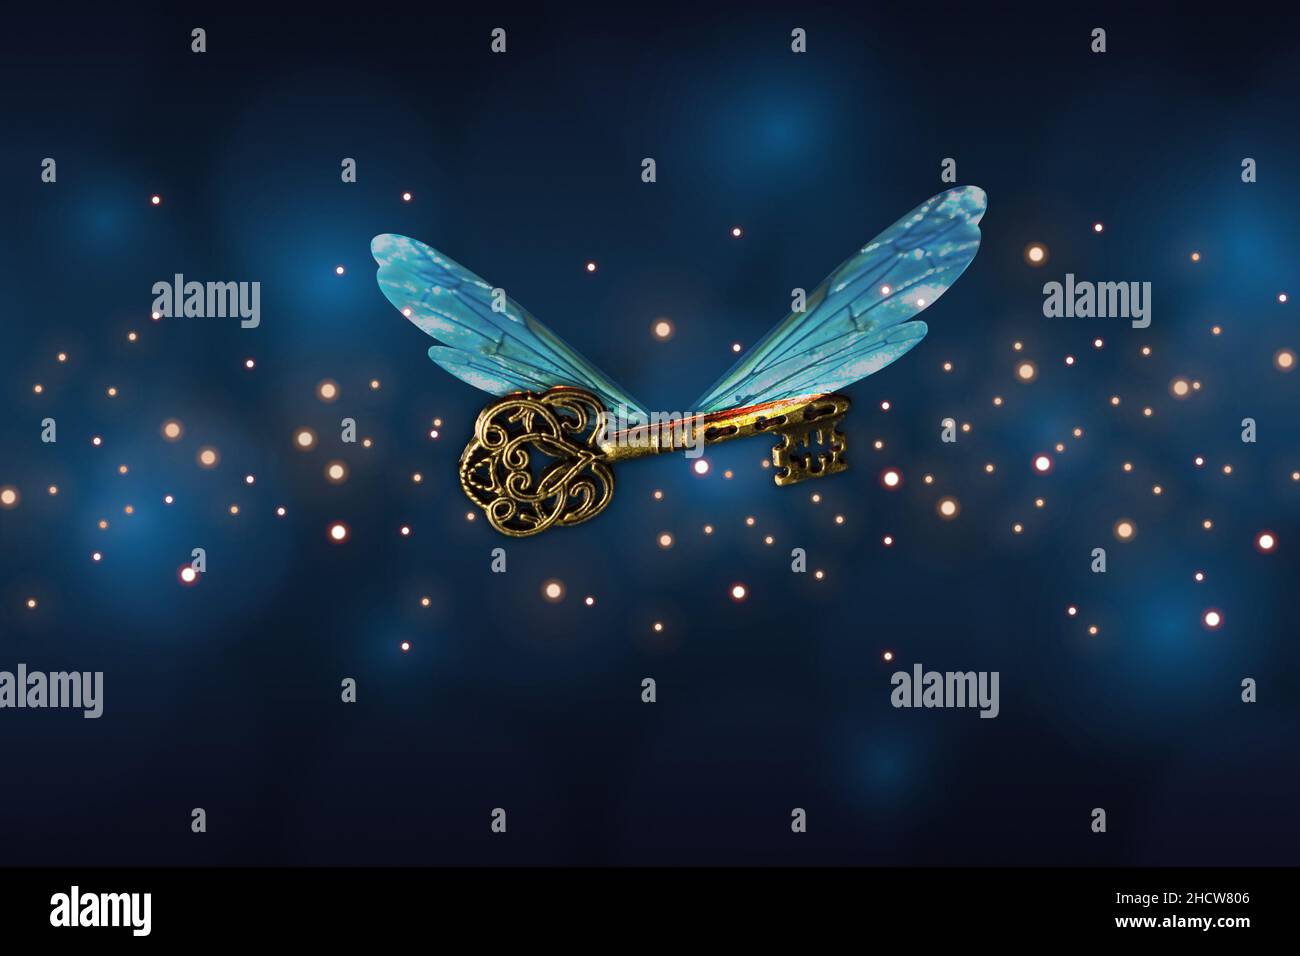 magico significato della chiave volante con le ali della libellula Foto Stock